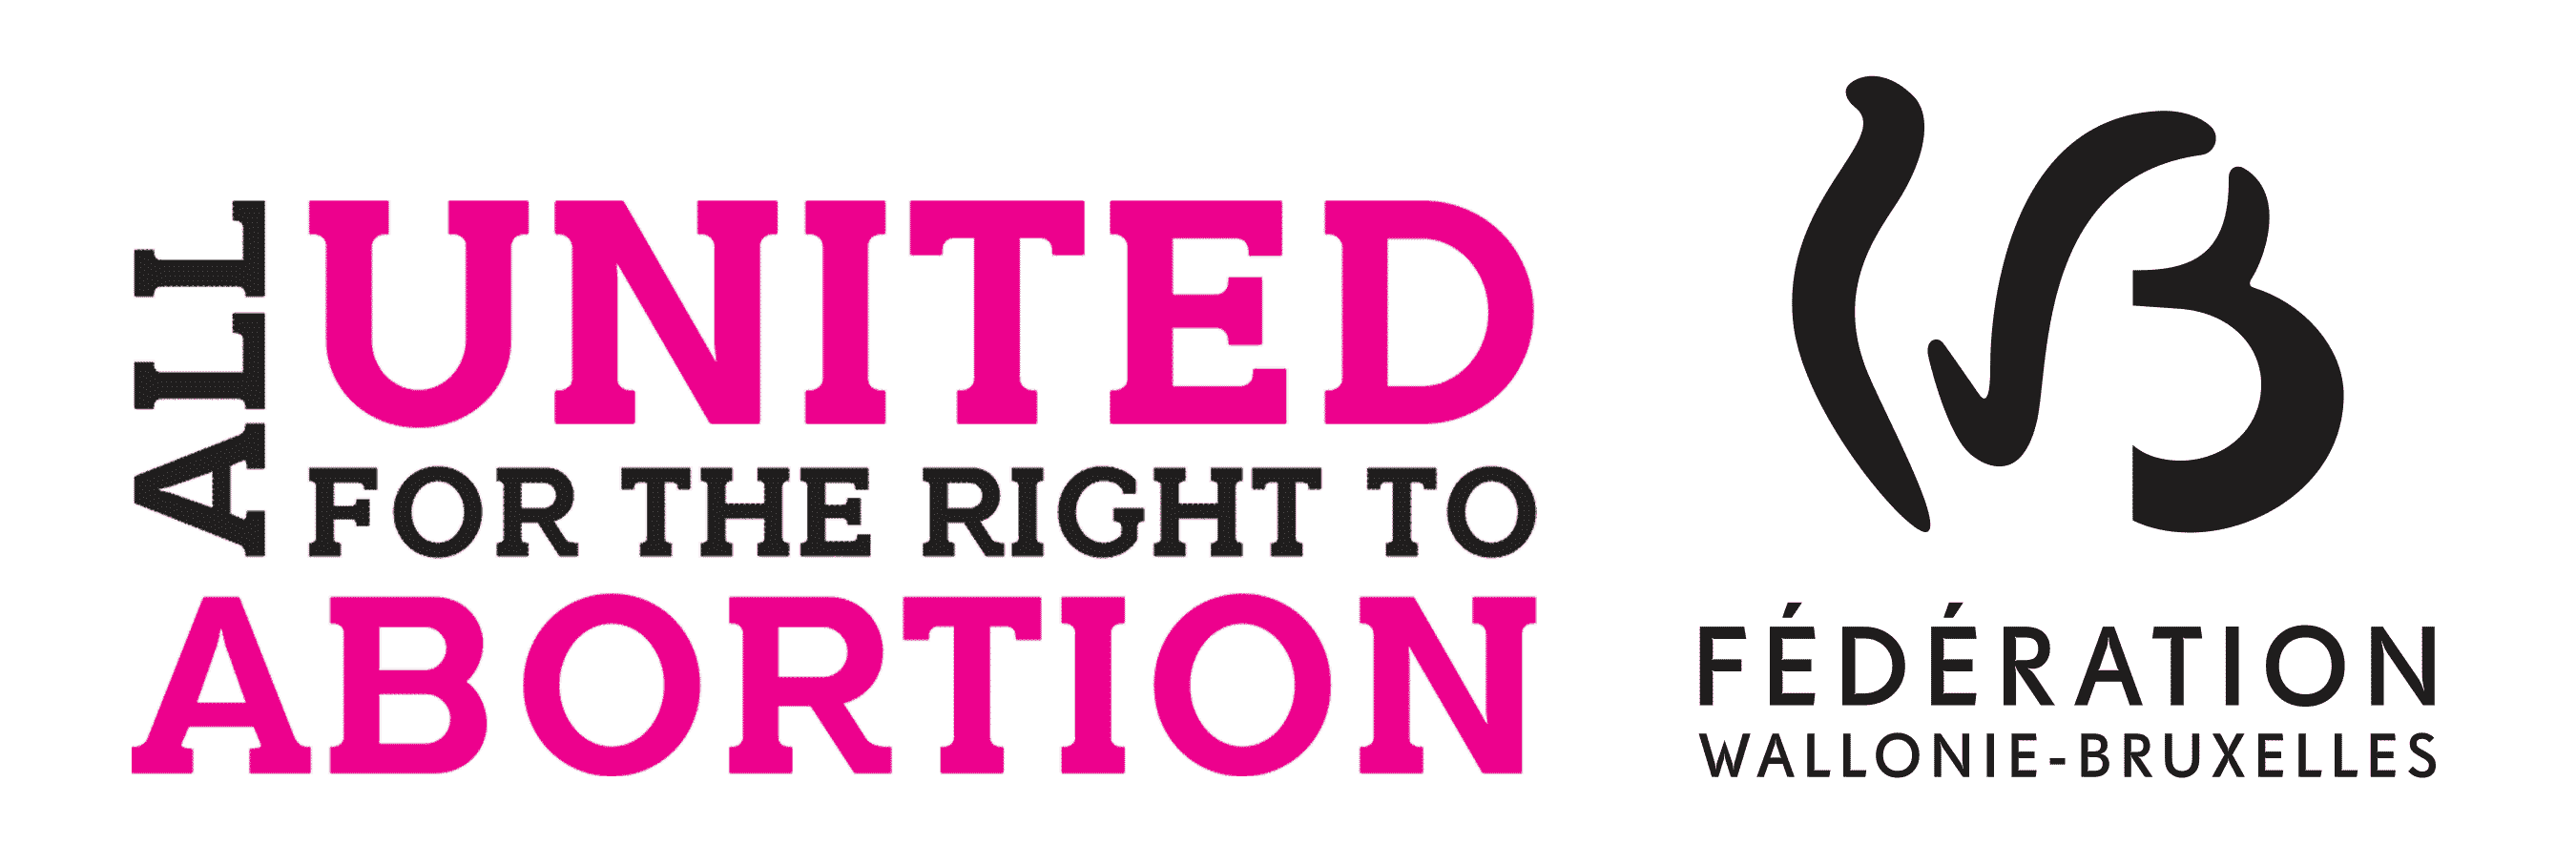 D’une seule voix pour le droit à l’avortement